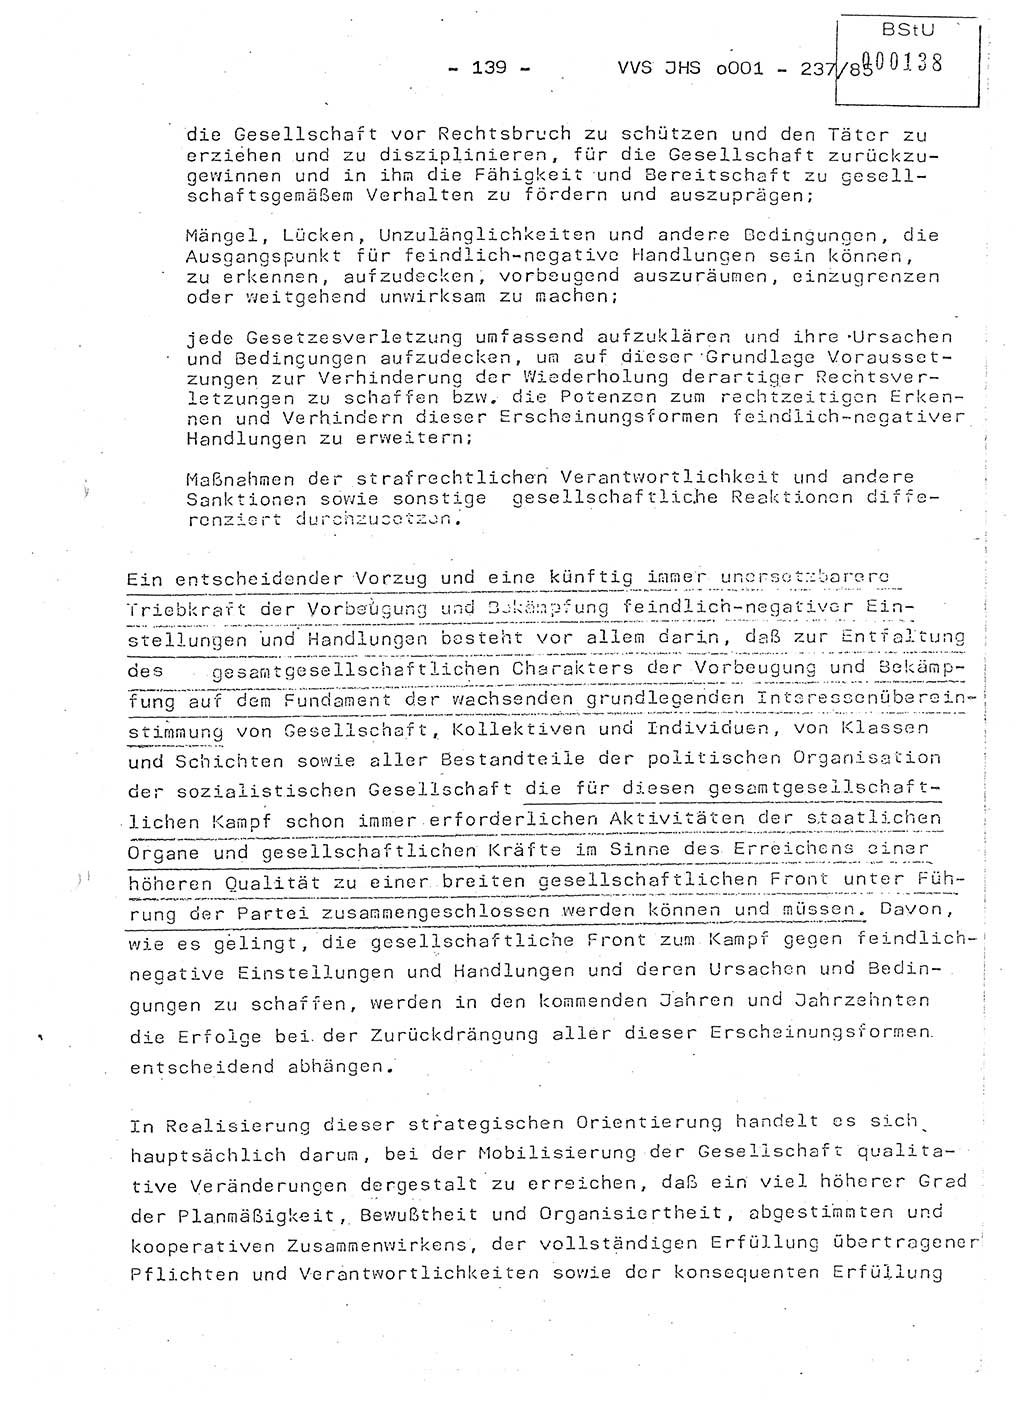 Dissertation Oberstleutnant Peter Jakulski (JHS), Oberstleutnat Christian Rudolph (HA Ⅸ), Major Horst Böttger (ZMD), Major Wolfgang Grüneberg (JHS), Major Albert Meutsch (JHS), Ministerium für Staatssicherheit (MfS) [Deutsche Demokratische Republik (DDR)], Juristische Hochschule (JHS), Vertrauliche Verschlußsache (VVS) o001-237/85, Potsdam 1985, Seite 139 (Diss. MfS DDR JHS VVS o001-237/85 1985, S. 139)